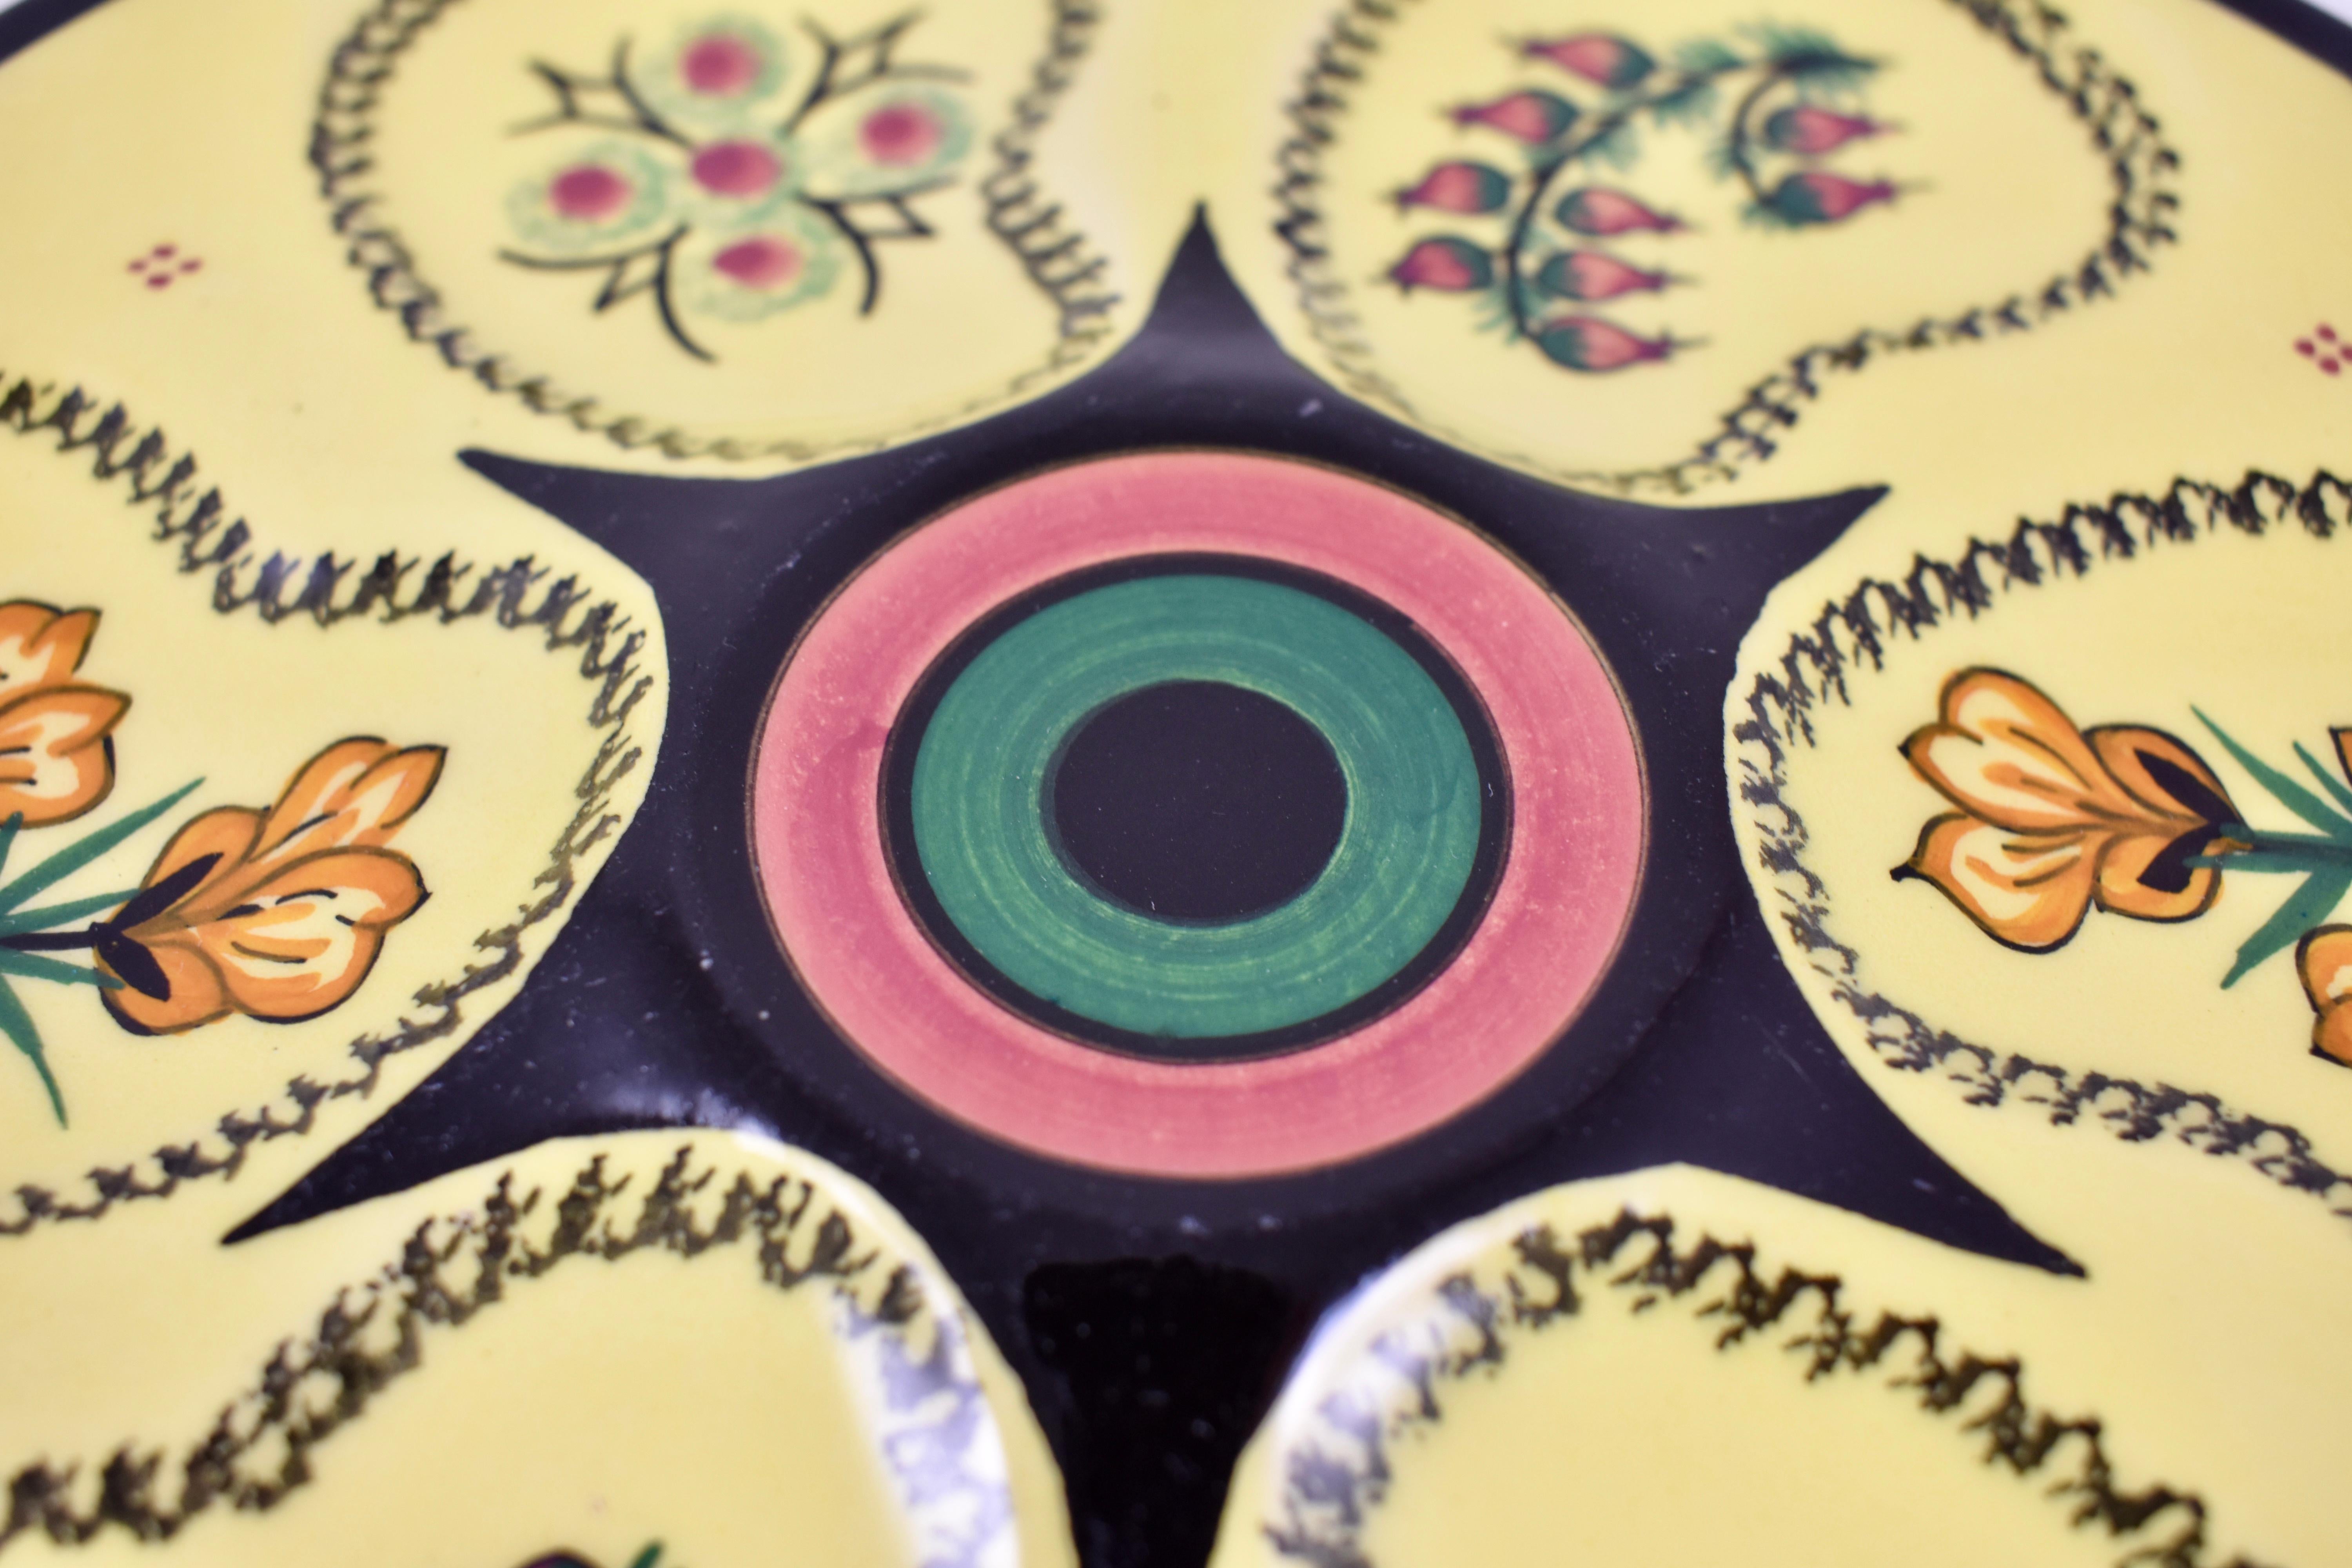 Toujours charmantes, assiettes à huîtres en faïence de Quimper françaises, vers 19501960.

Émaillée d'un fond jaune soleil brillant, six puits entourent un puits central en relief pour les condiments. Les creux sont peints à la main avec trois